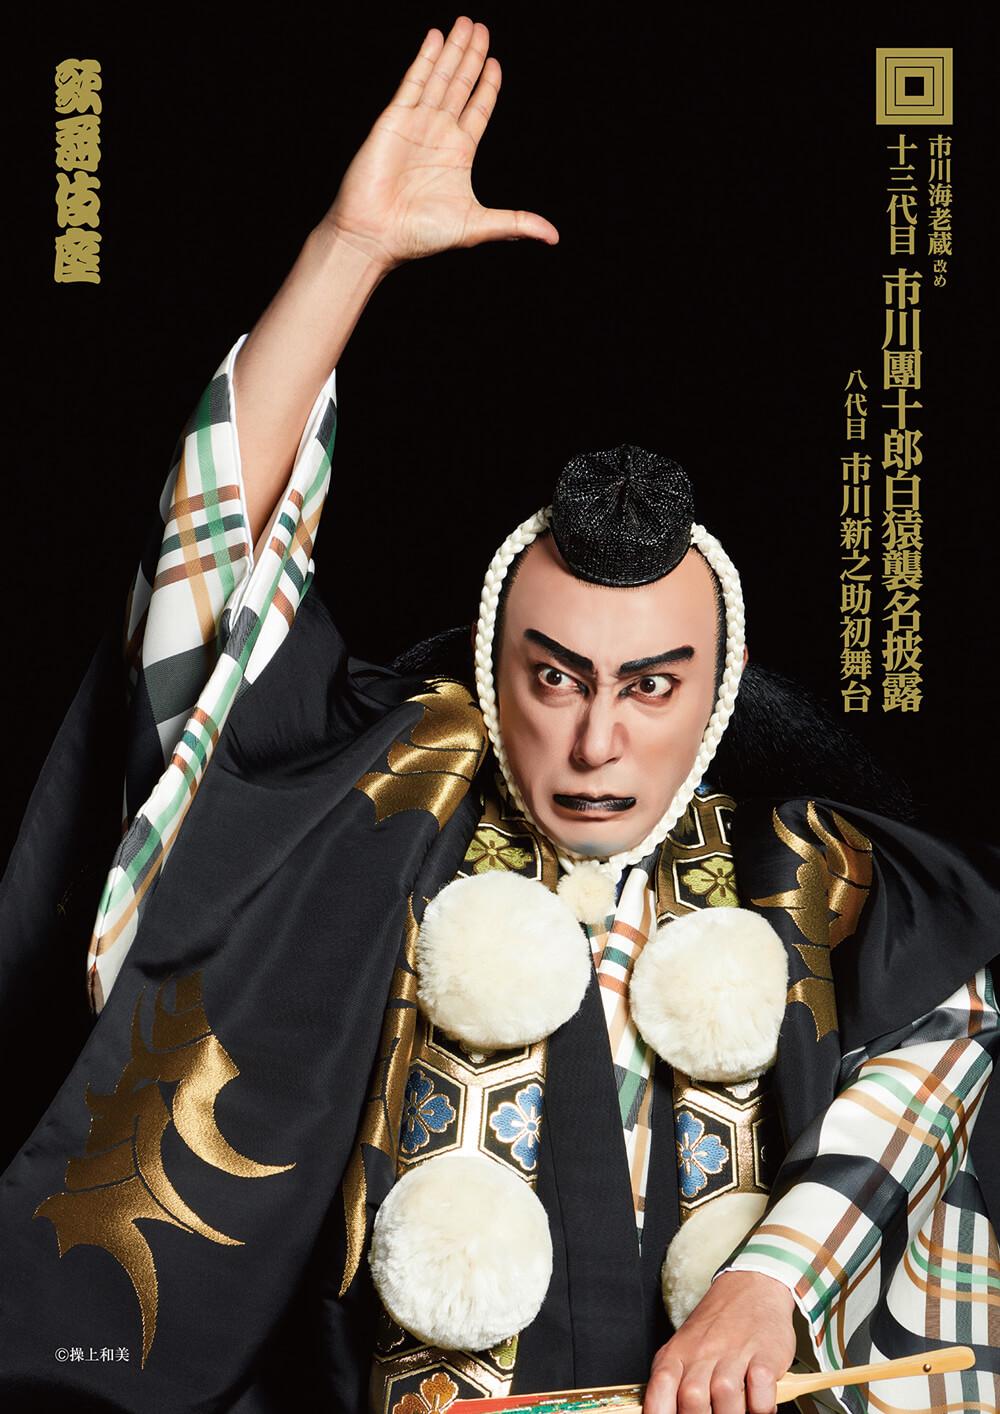 歌舞伎座「十一月吉例顔見世大歌舞伎」「十二月大歌舞伎」